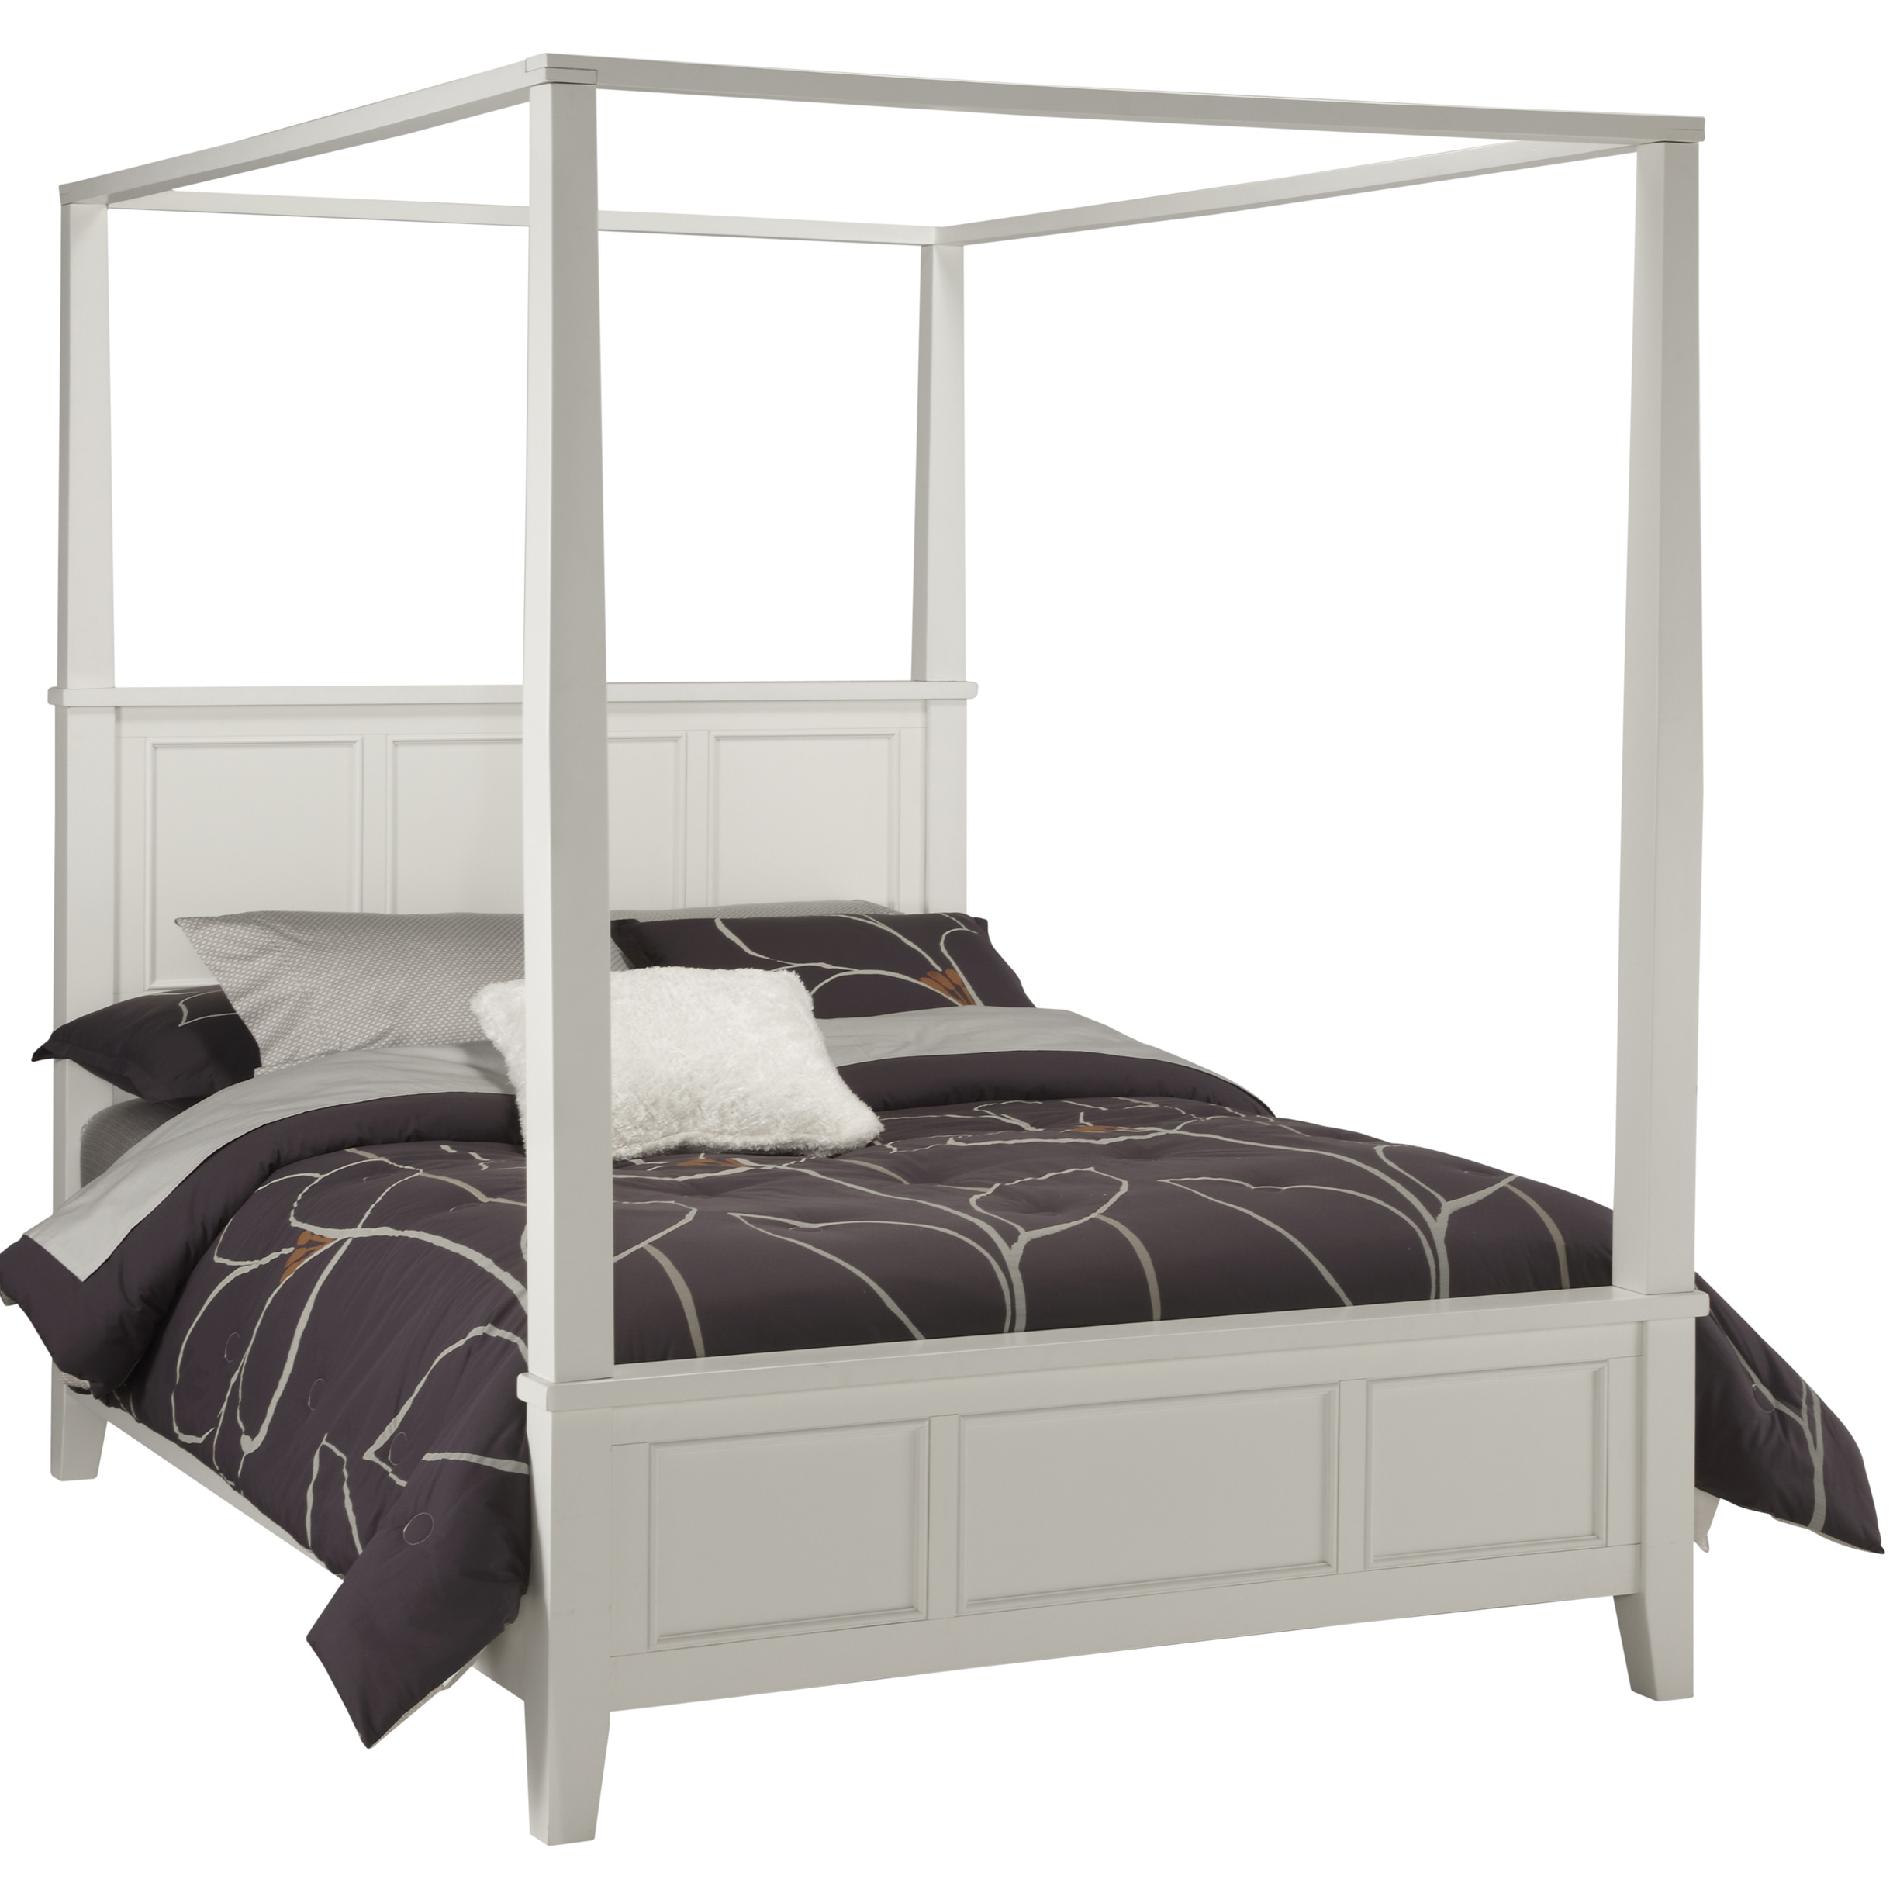 ... Black King Canopy Bed - Home - Furniture - Bedroom Furniture - Beds